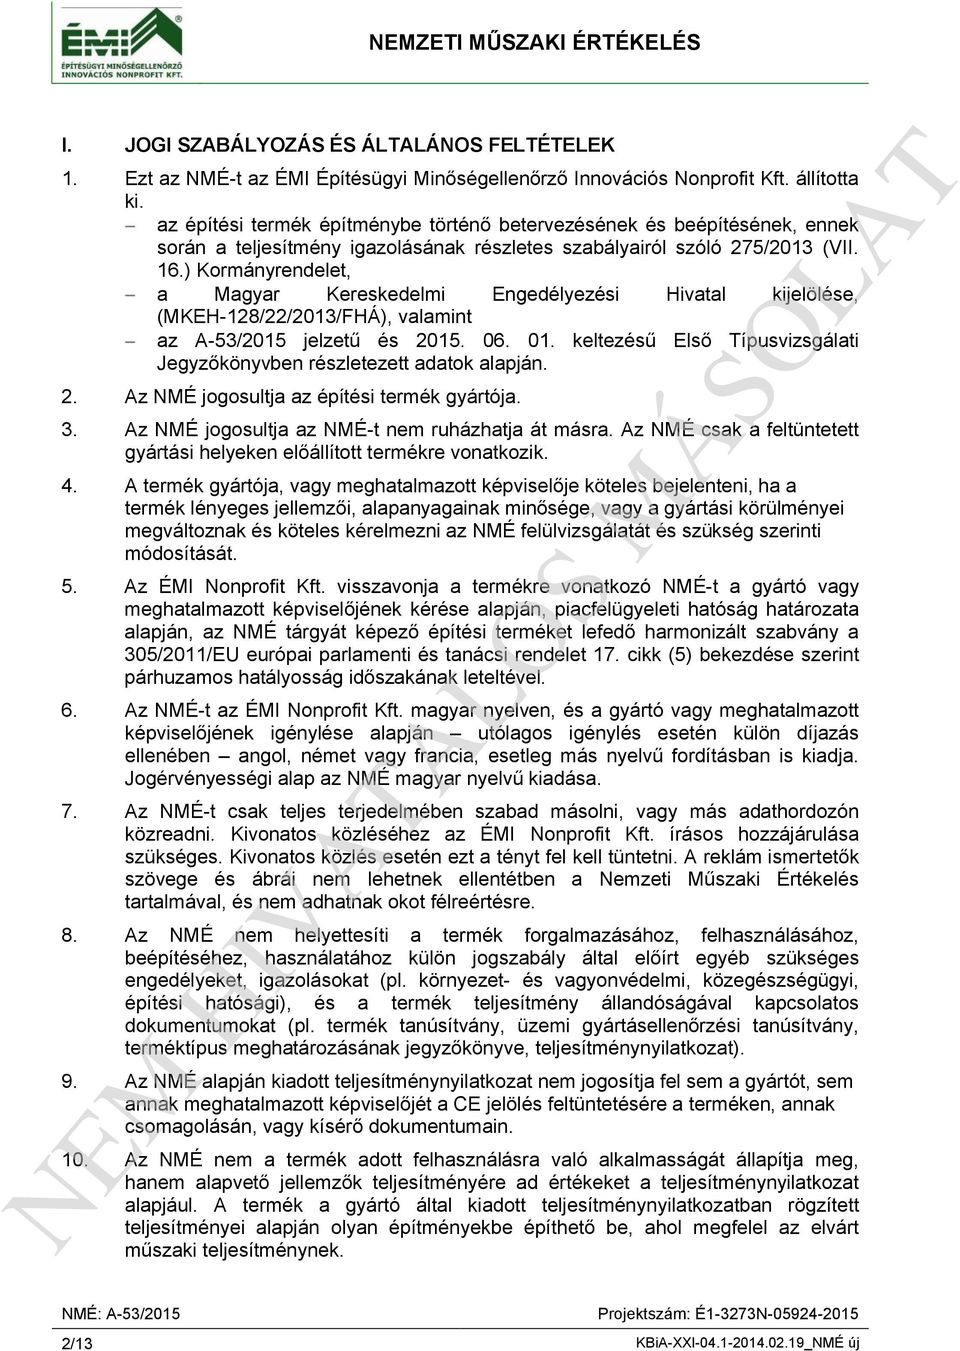 ) Kormányrendelet, a Magyar Kereskedelmi Engedélyezési Hivatal kijelölése, (MKEH-128/22/2013/FHÁ), valamint az A-53/2015 jelzetű és 2015. 06. 01.